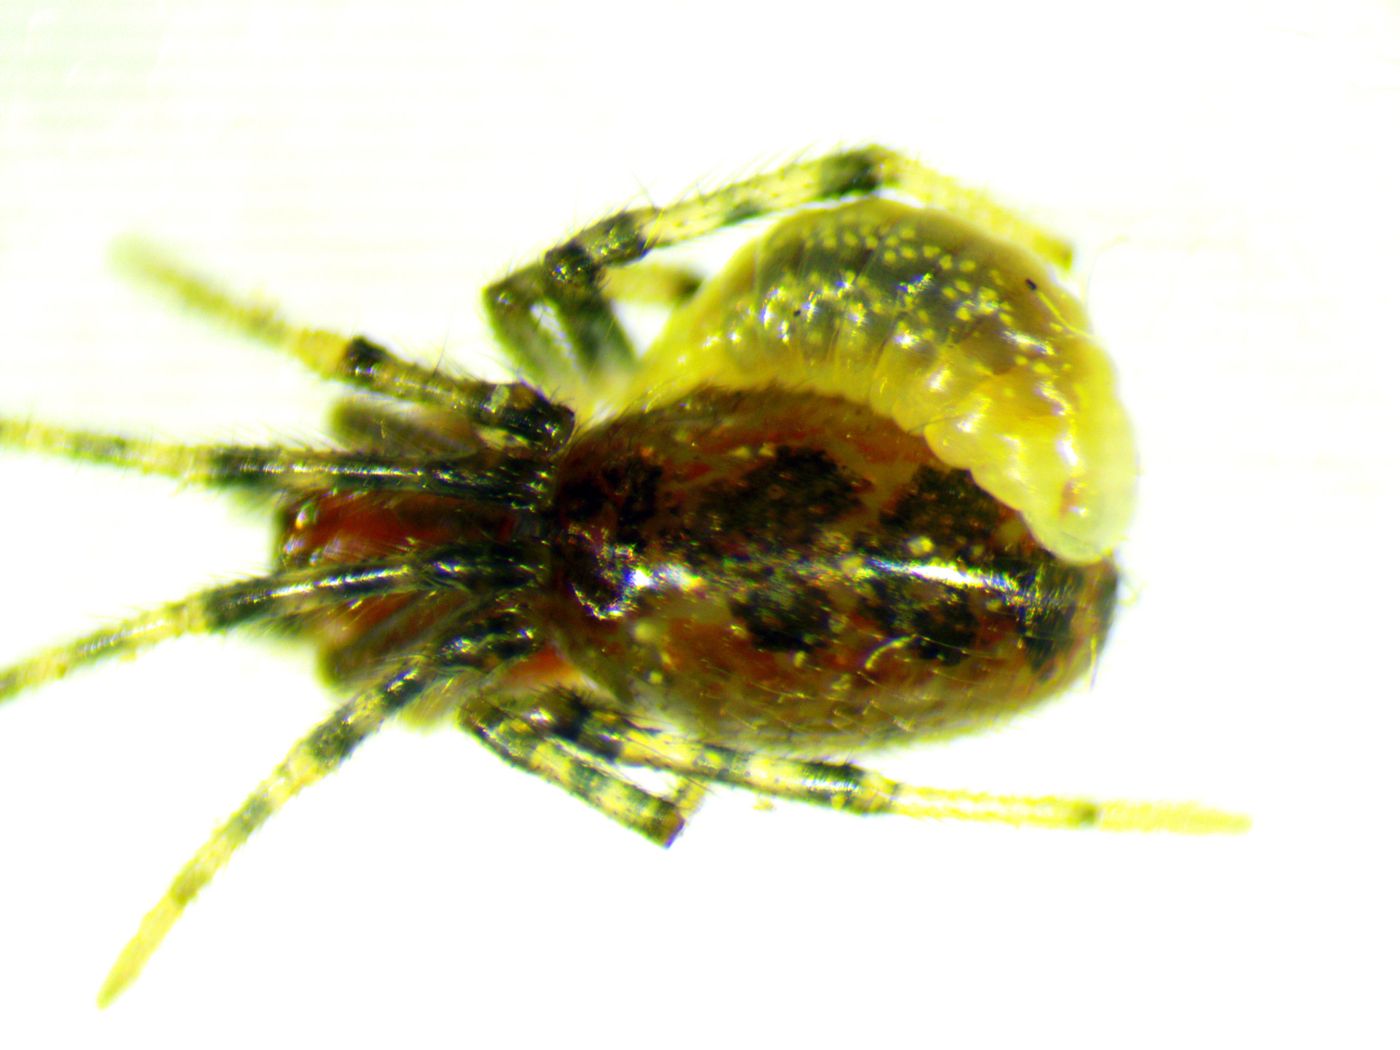 A close-up of the parasitoid wasp larva.